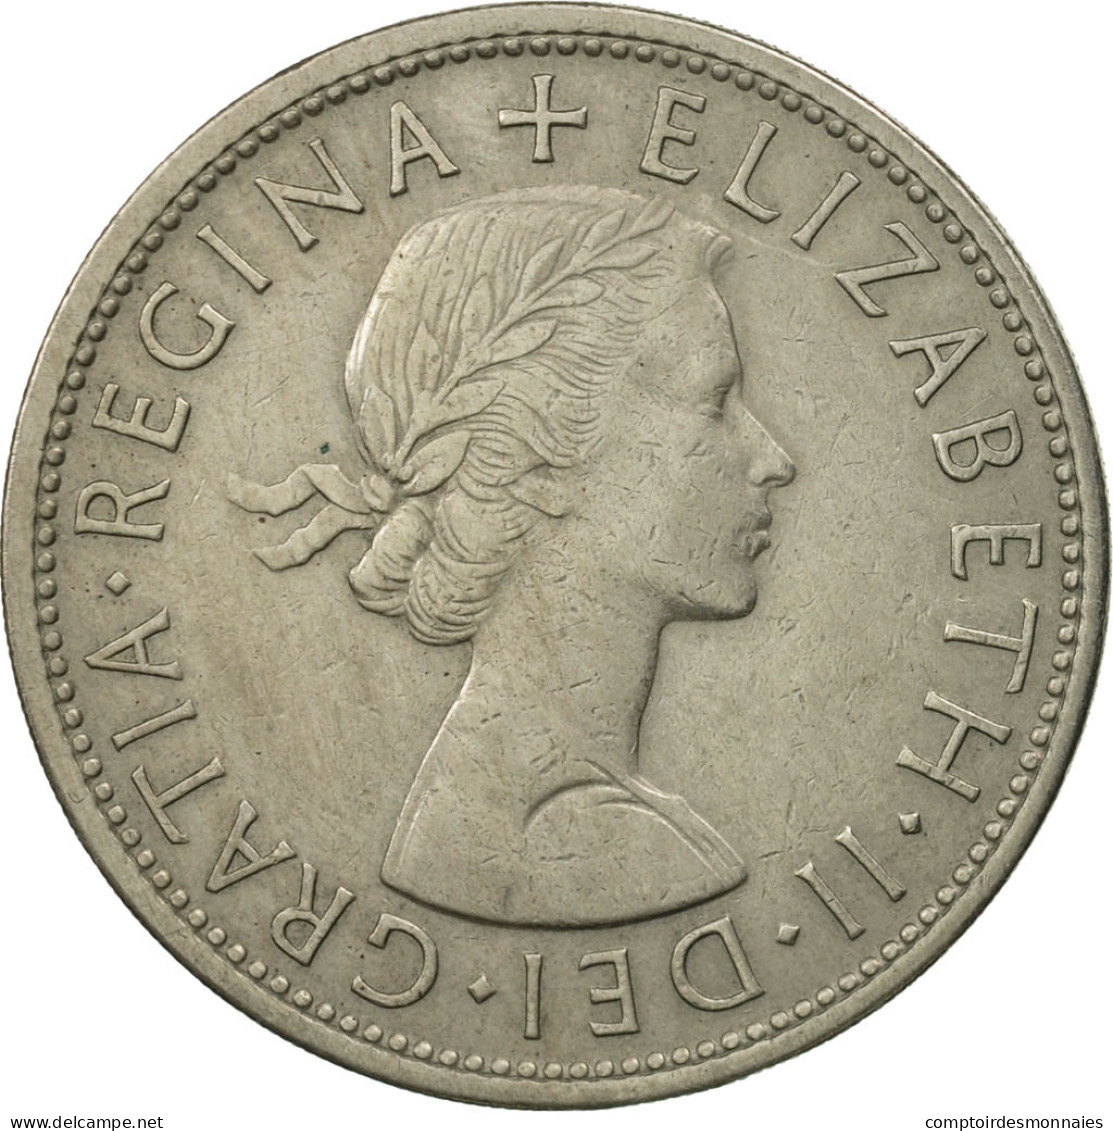 Monnaie, Grande-Bretagne, Elizabeth II, 1/2 Crown, 1956, TTB, Copper-nickel - K. 1/2 Crown